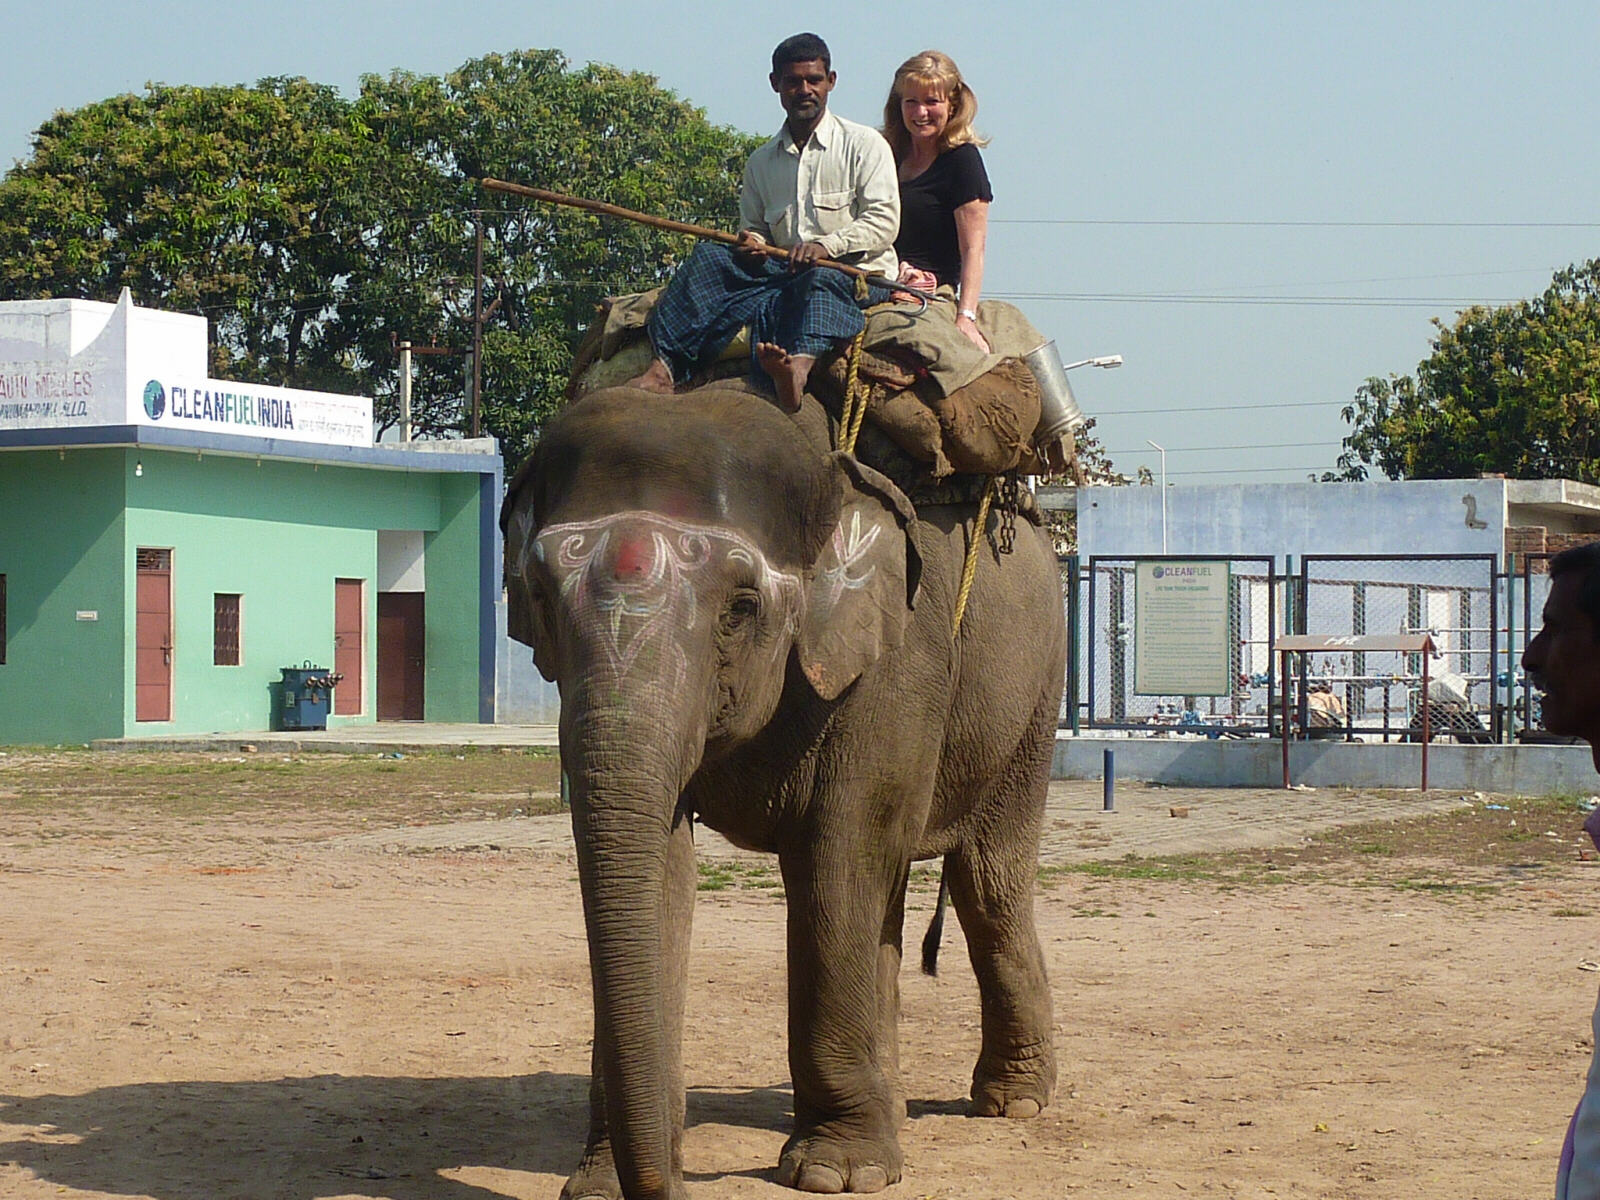 An elephant ride on the road to Varanasi, India